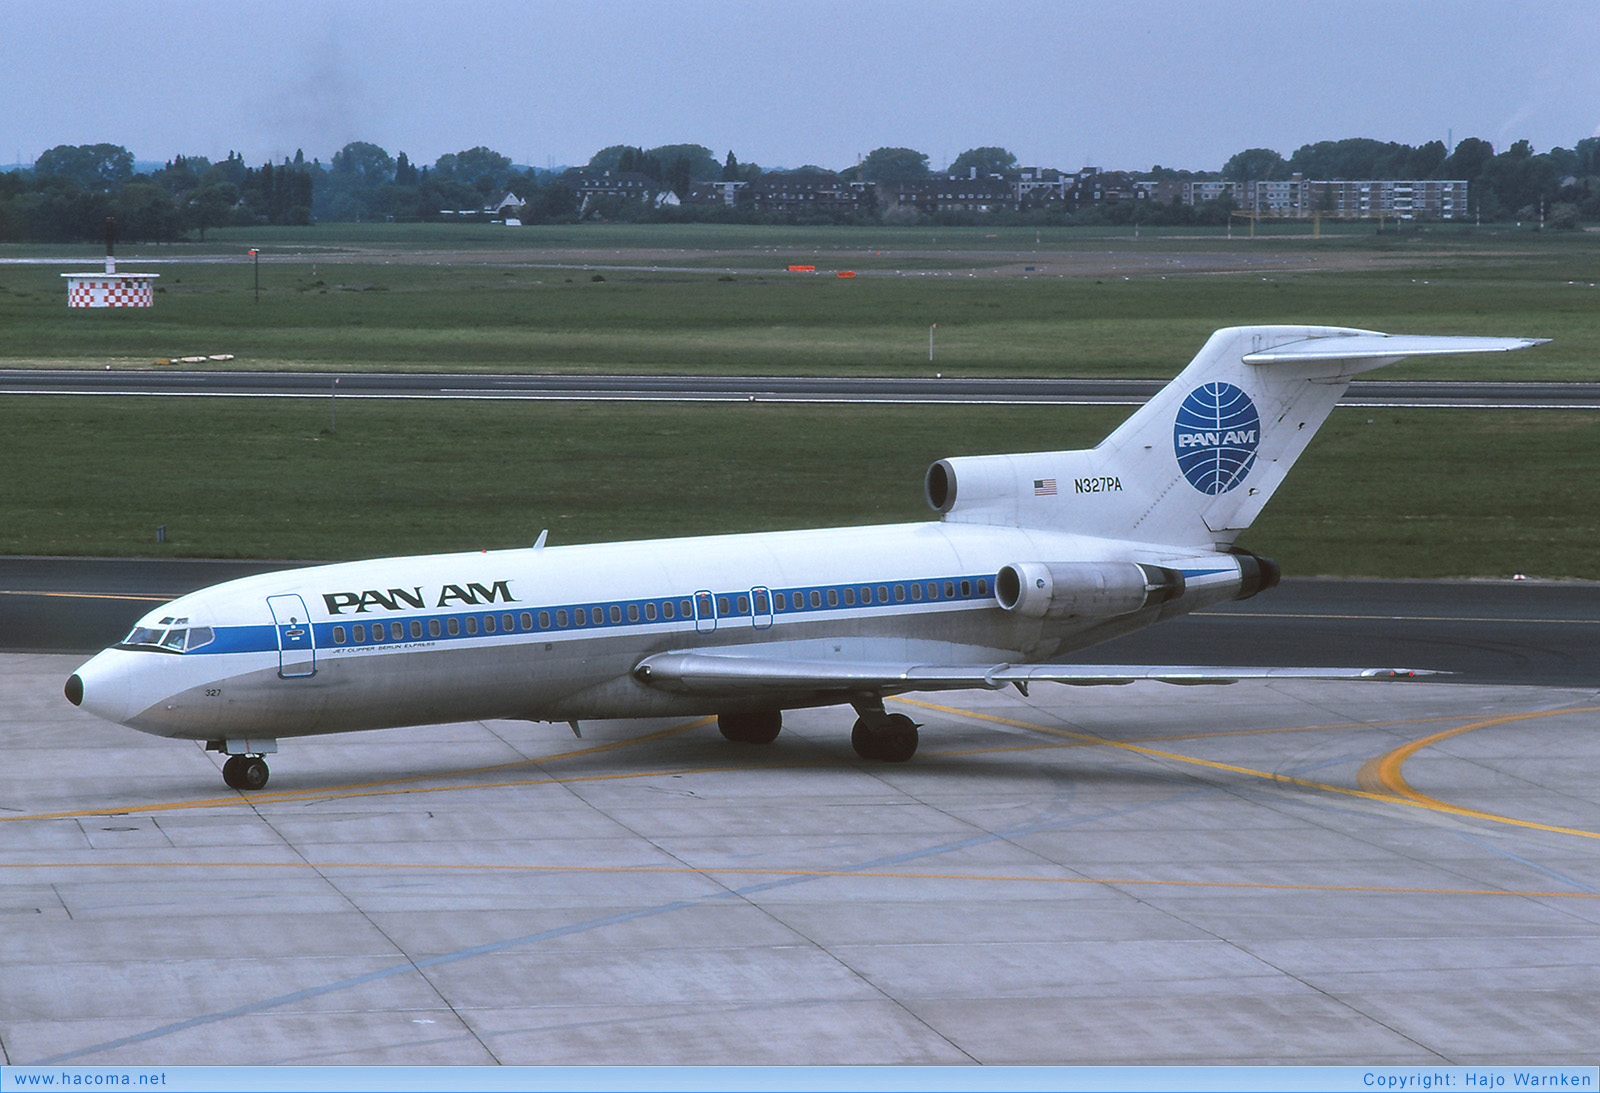 Foto von N327PA - Pan Am Clipper Hannover / Inca / Duesseldorf / Pocahontas / Meteor / Berlin Express - Flughafen Düsseldorf - 1975